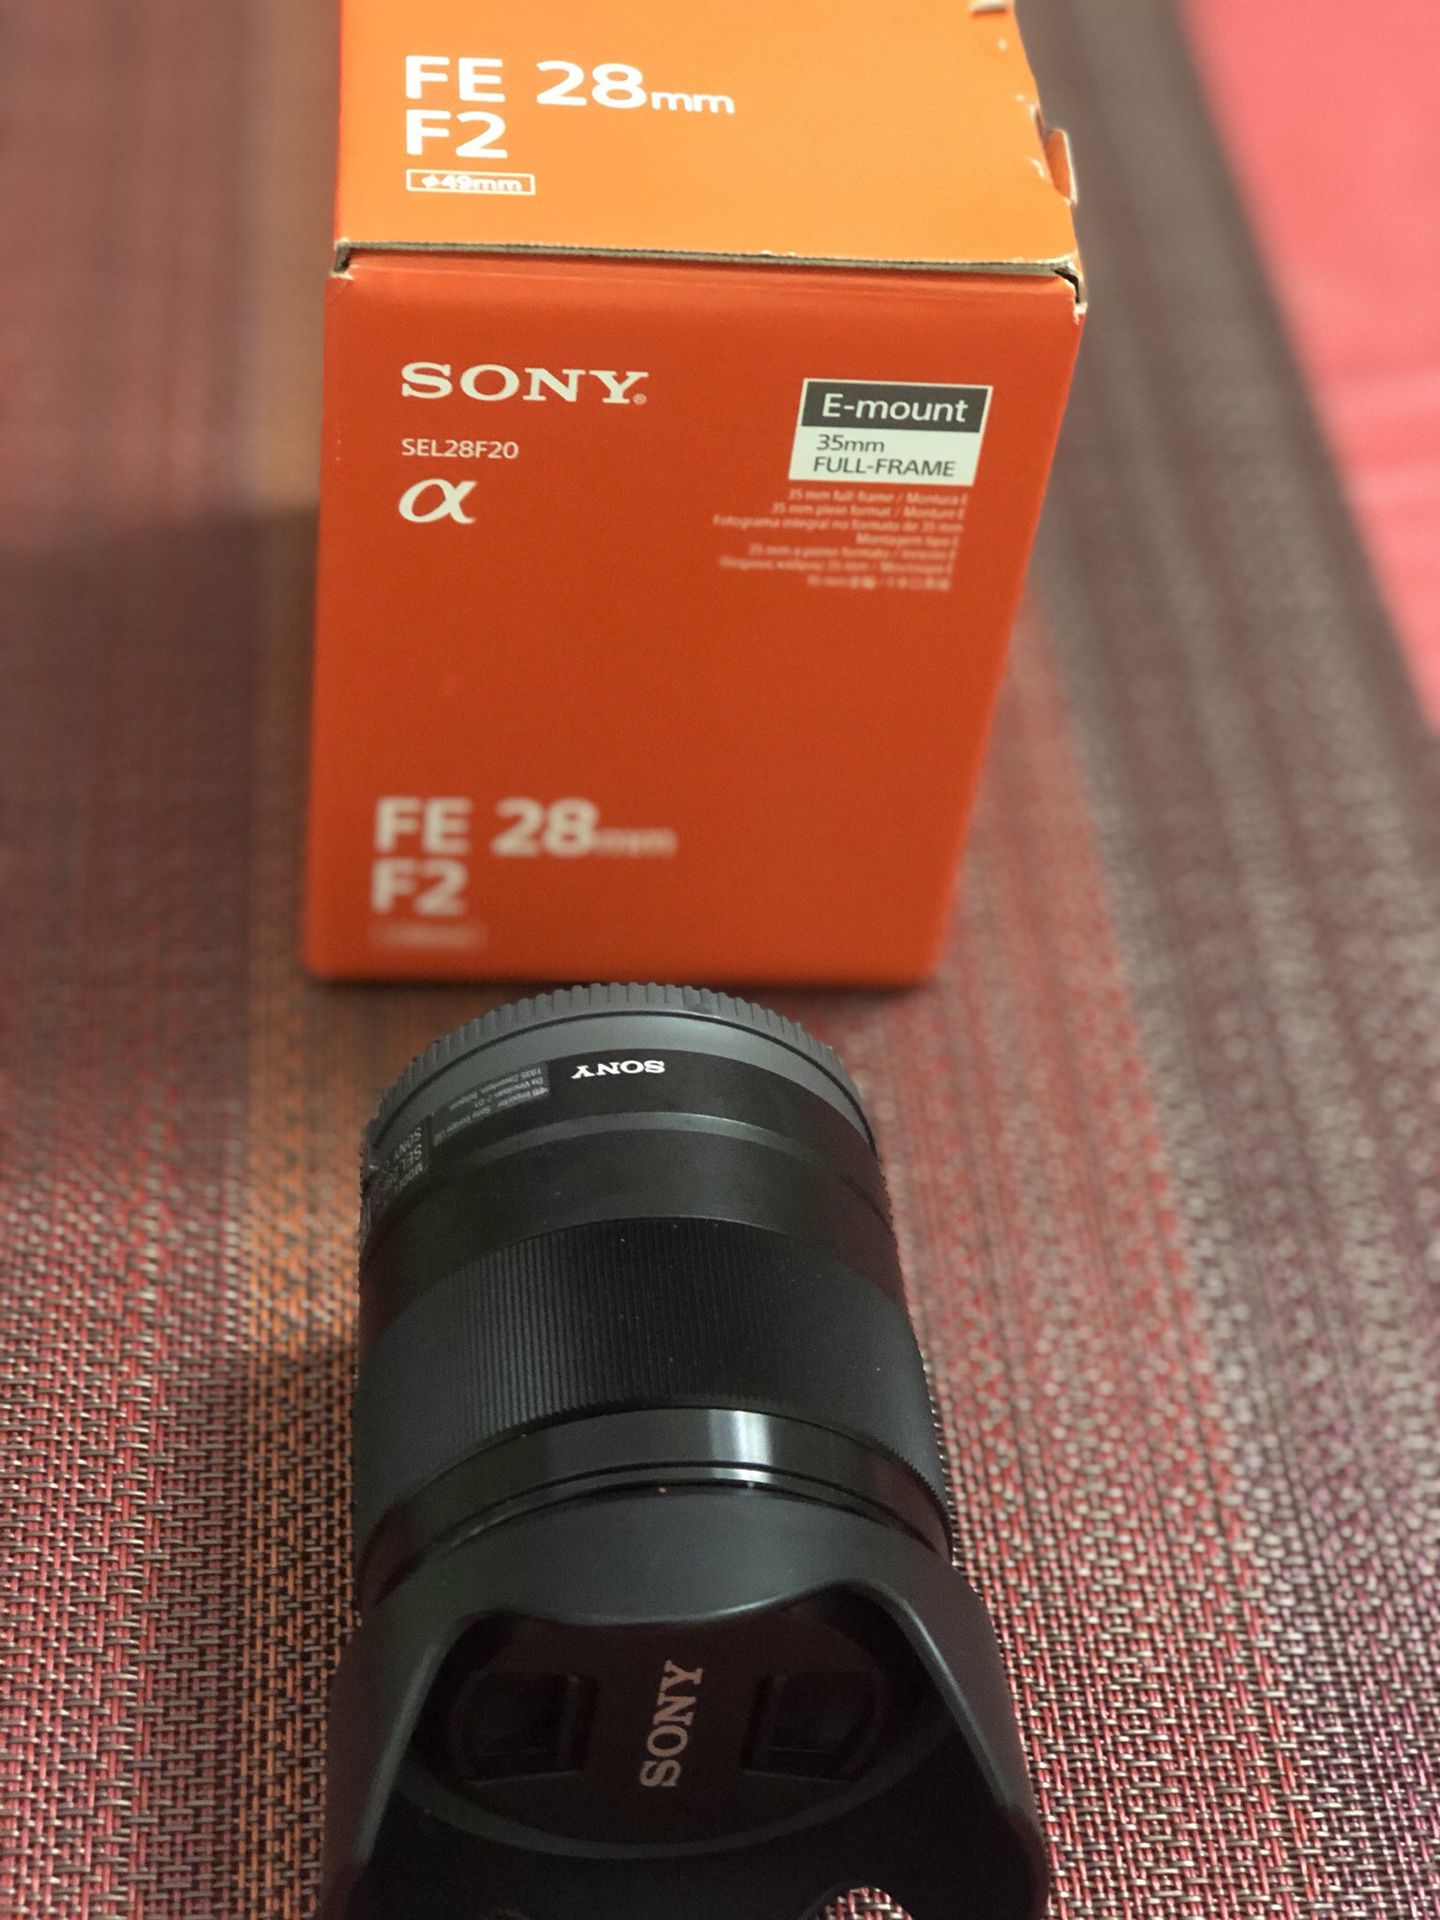 Sony 28mm f/2 camera lens